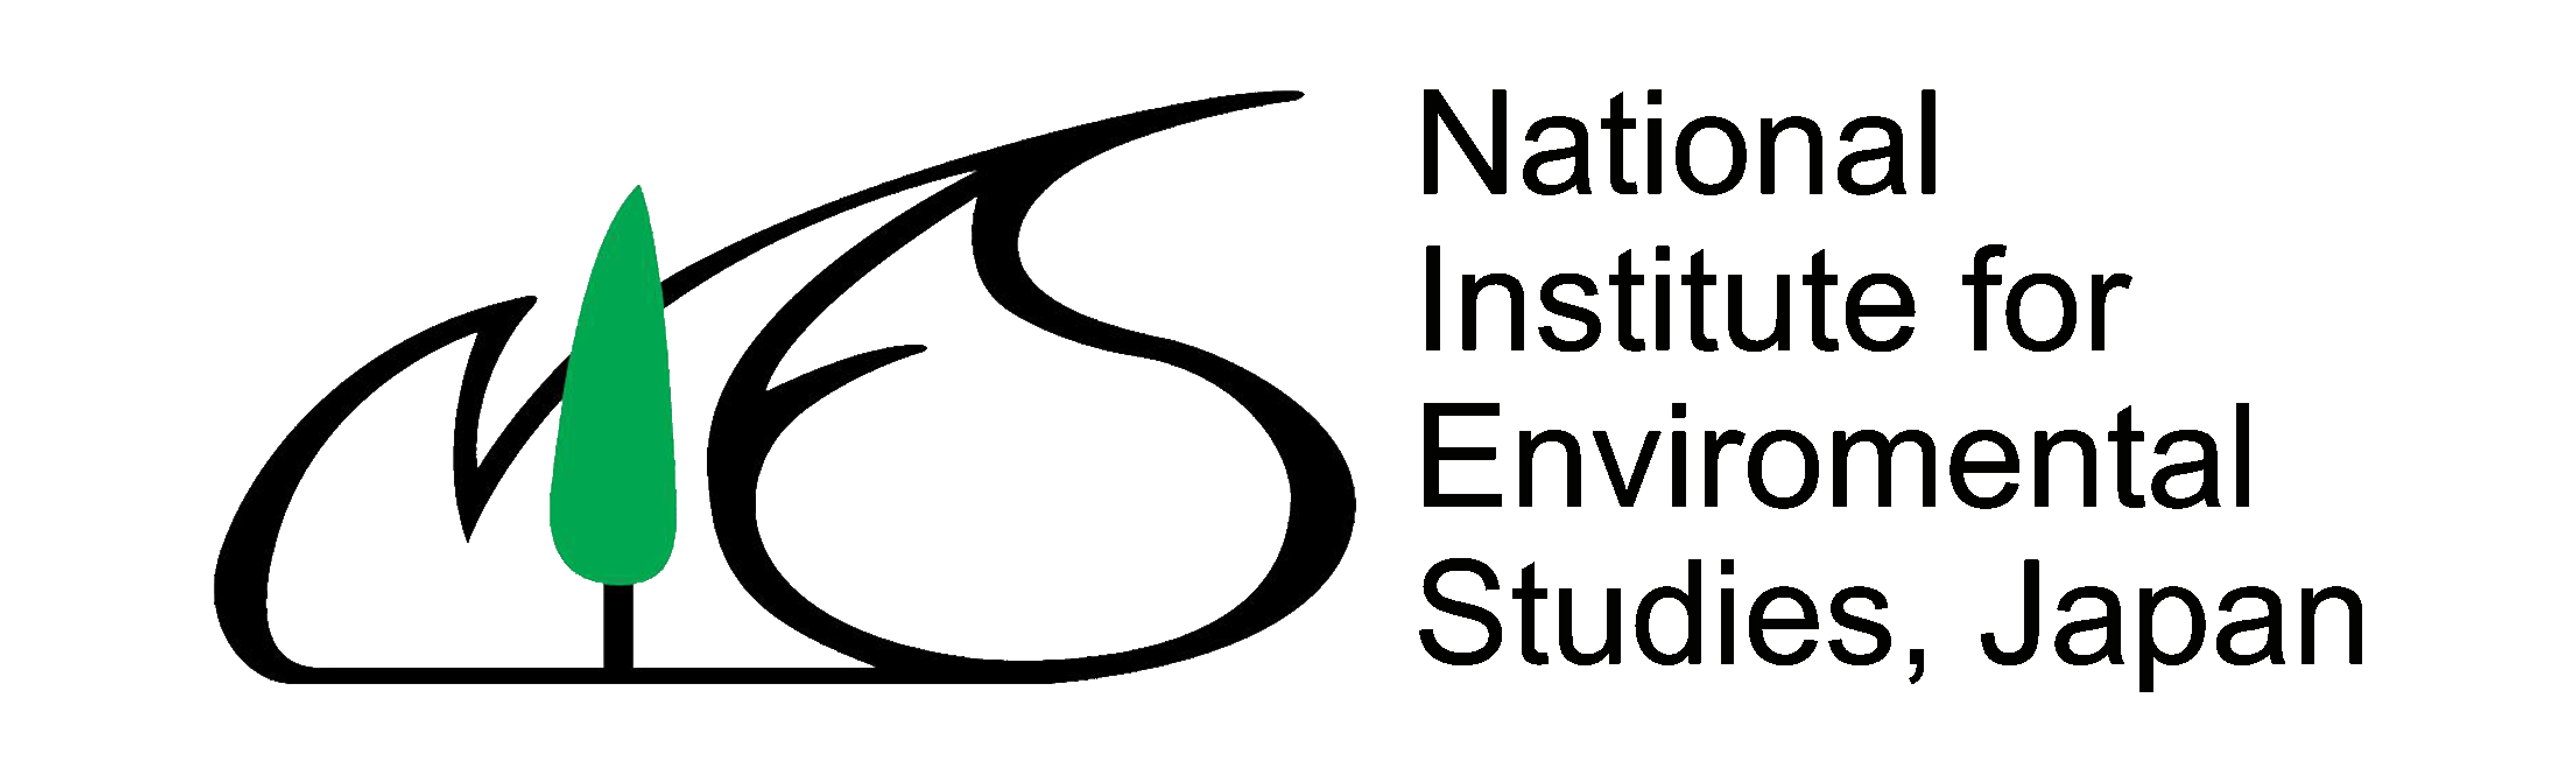 Natinal institute for Environmental Studies, Japan